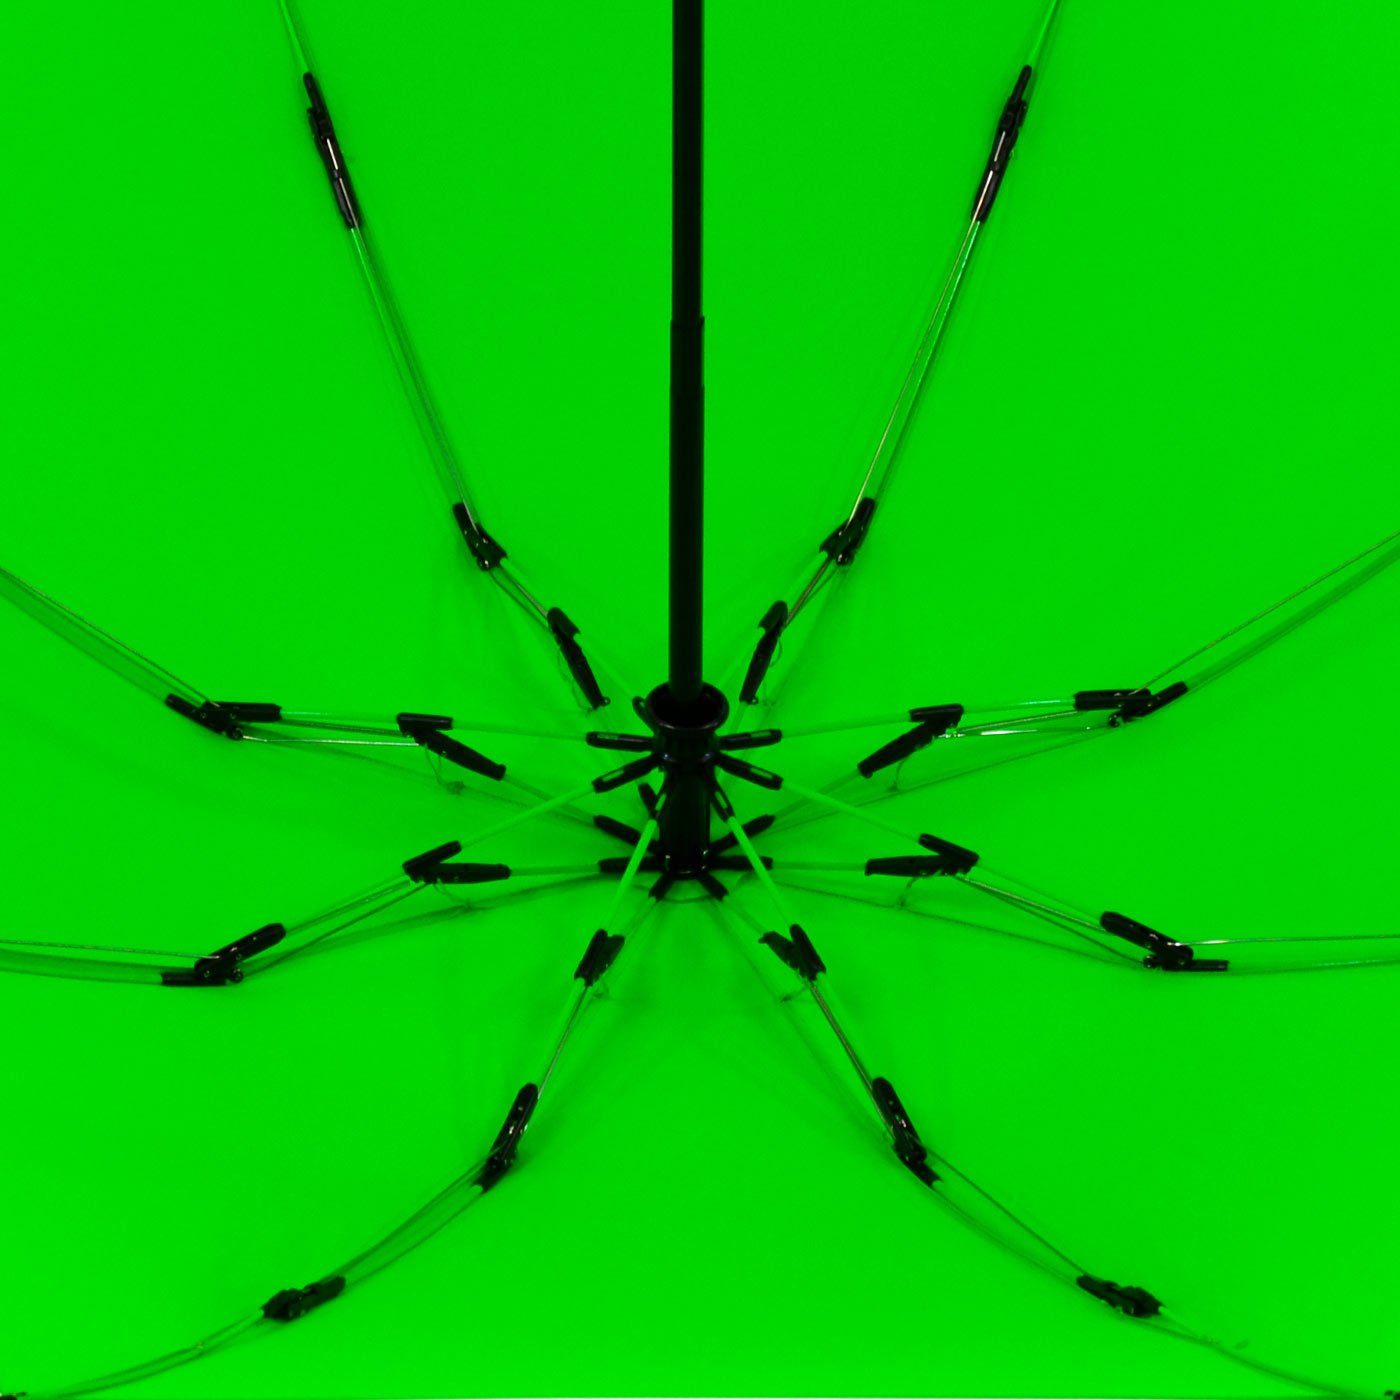 iX-brella Taschenregenschirm Reverse umgekehrt öffnender mit Speichen bunten neon-grün Fiberglas-Automatiksch, stabilen